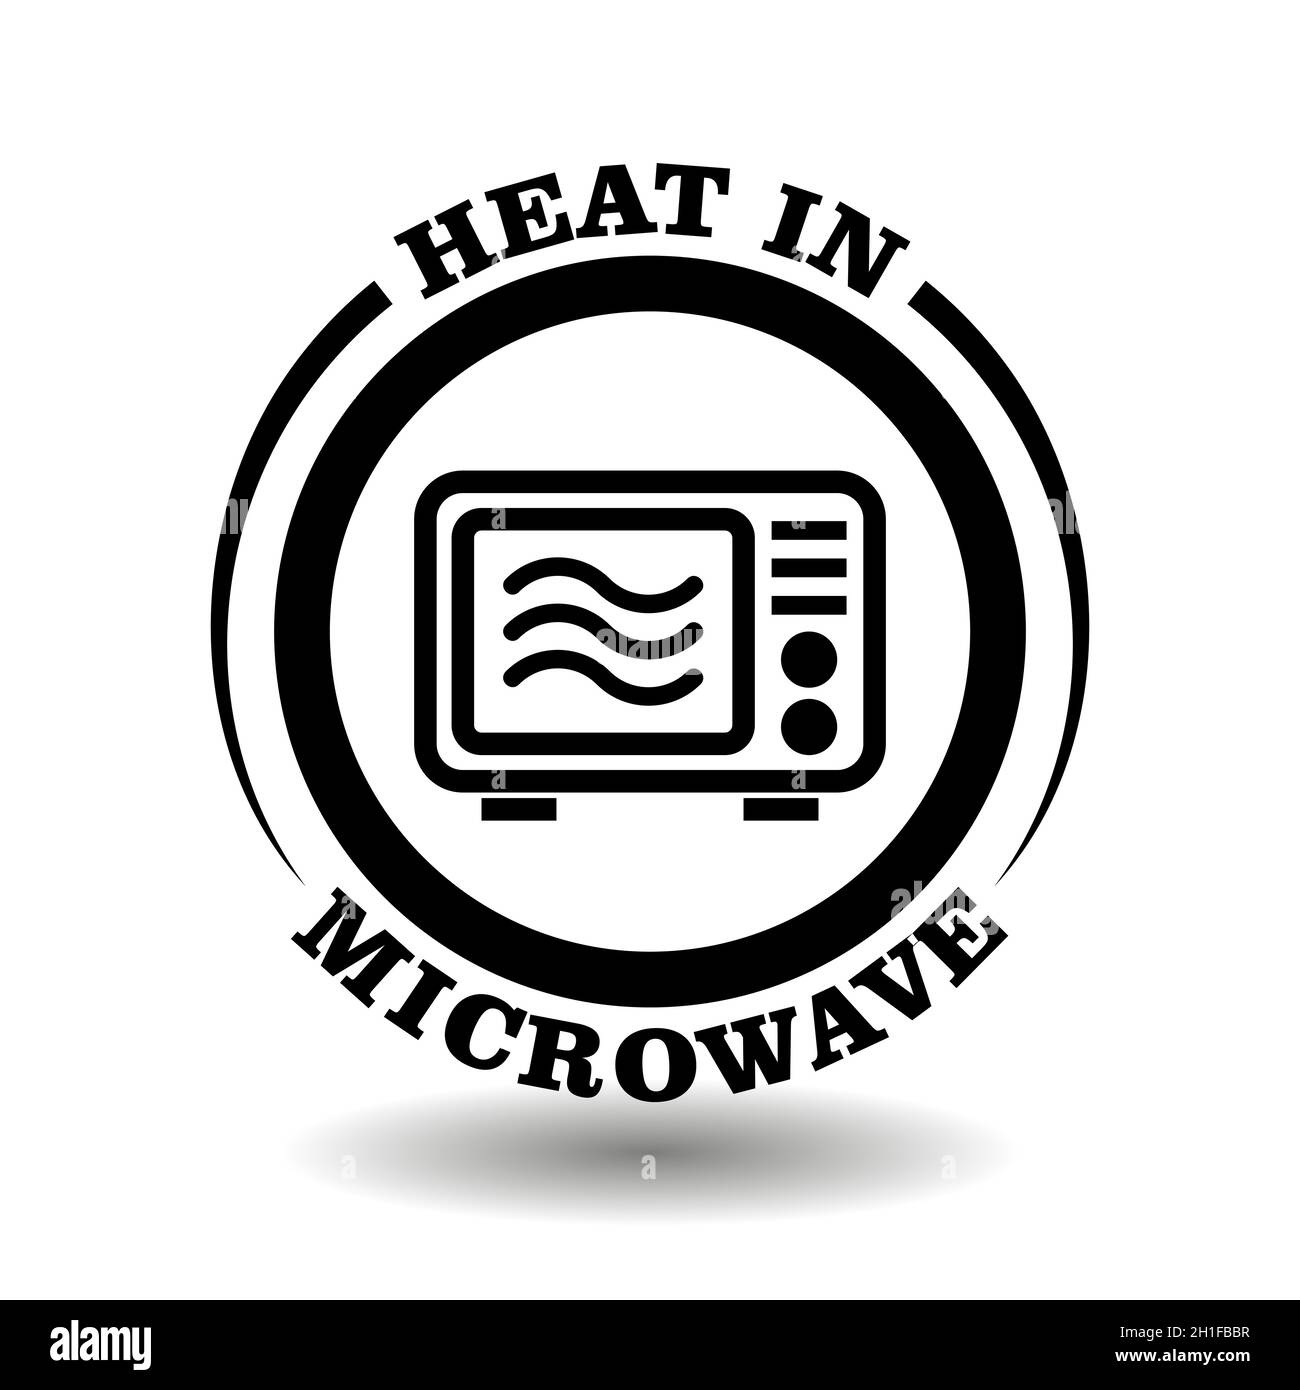 Calore tondo con icona nel microonde per etichettare confezioni di prodotti alimentari adatti per il riscaldamento nel forno a microonde. Simbolo semplice per popcorn o impacchettine surgelate Illustrazione Vettoriale